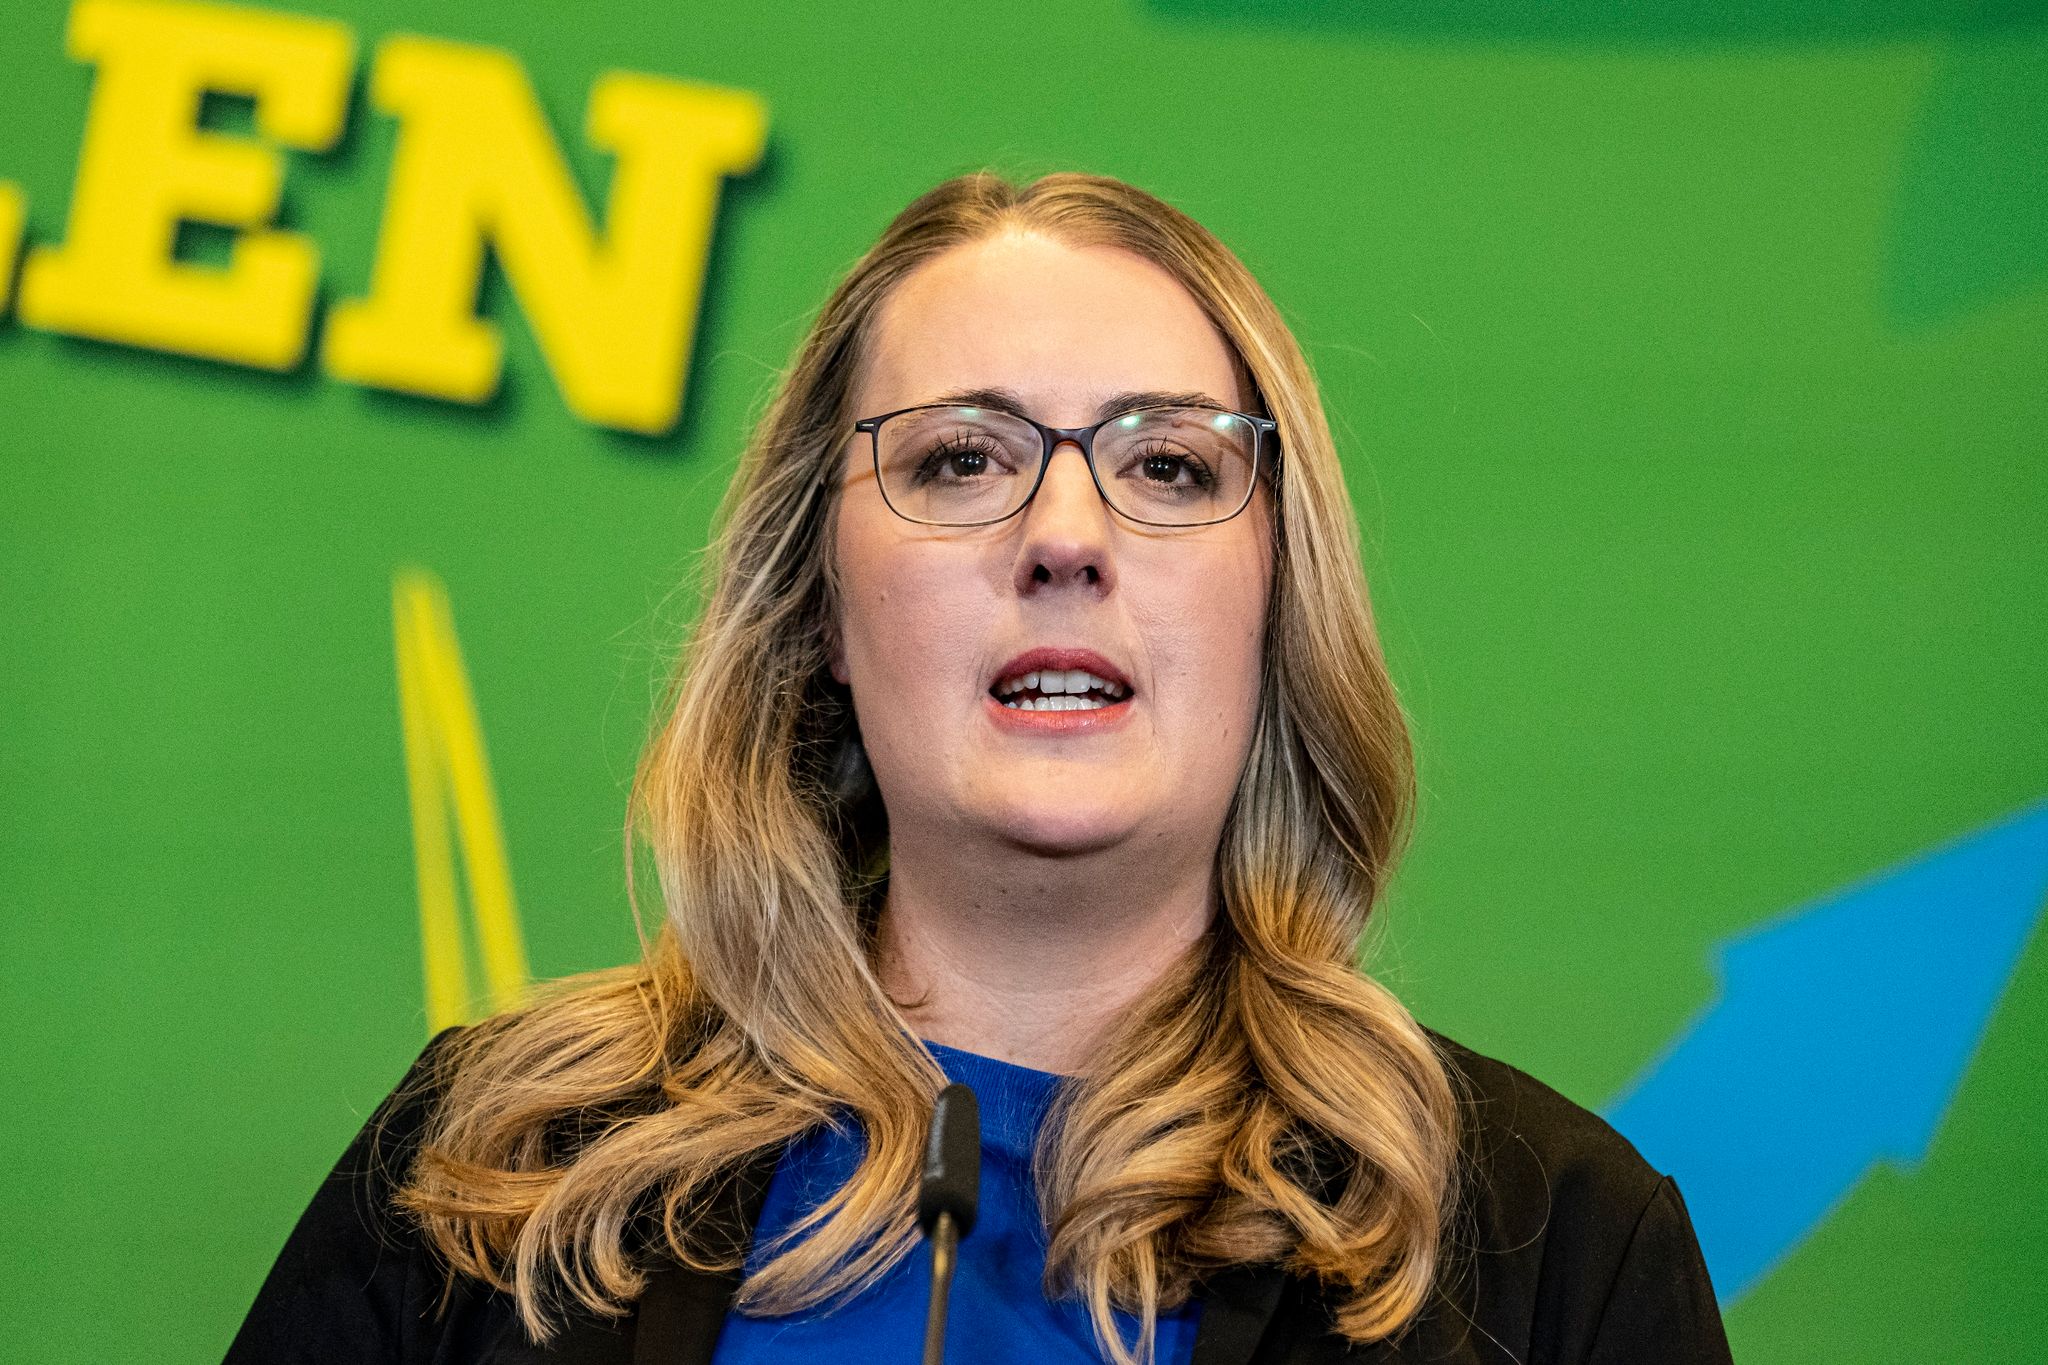 Katharina Dröge, Bundestags-Fraktionsvorsitzende von Bündnis 90/Die Grünen.